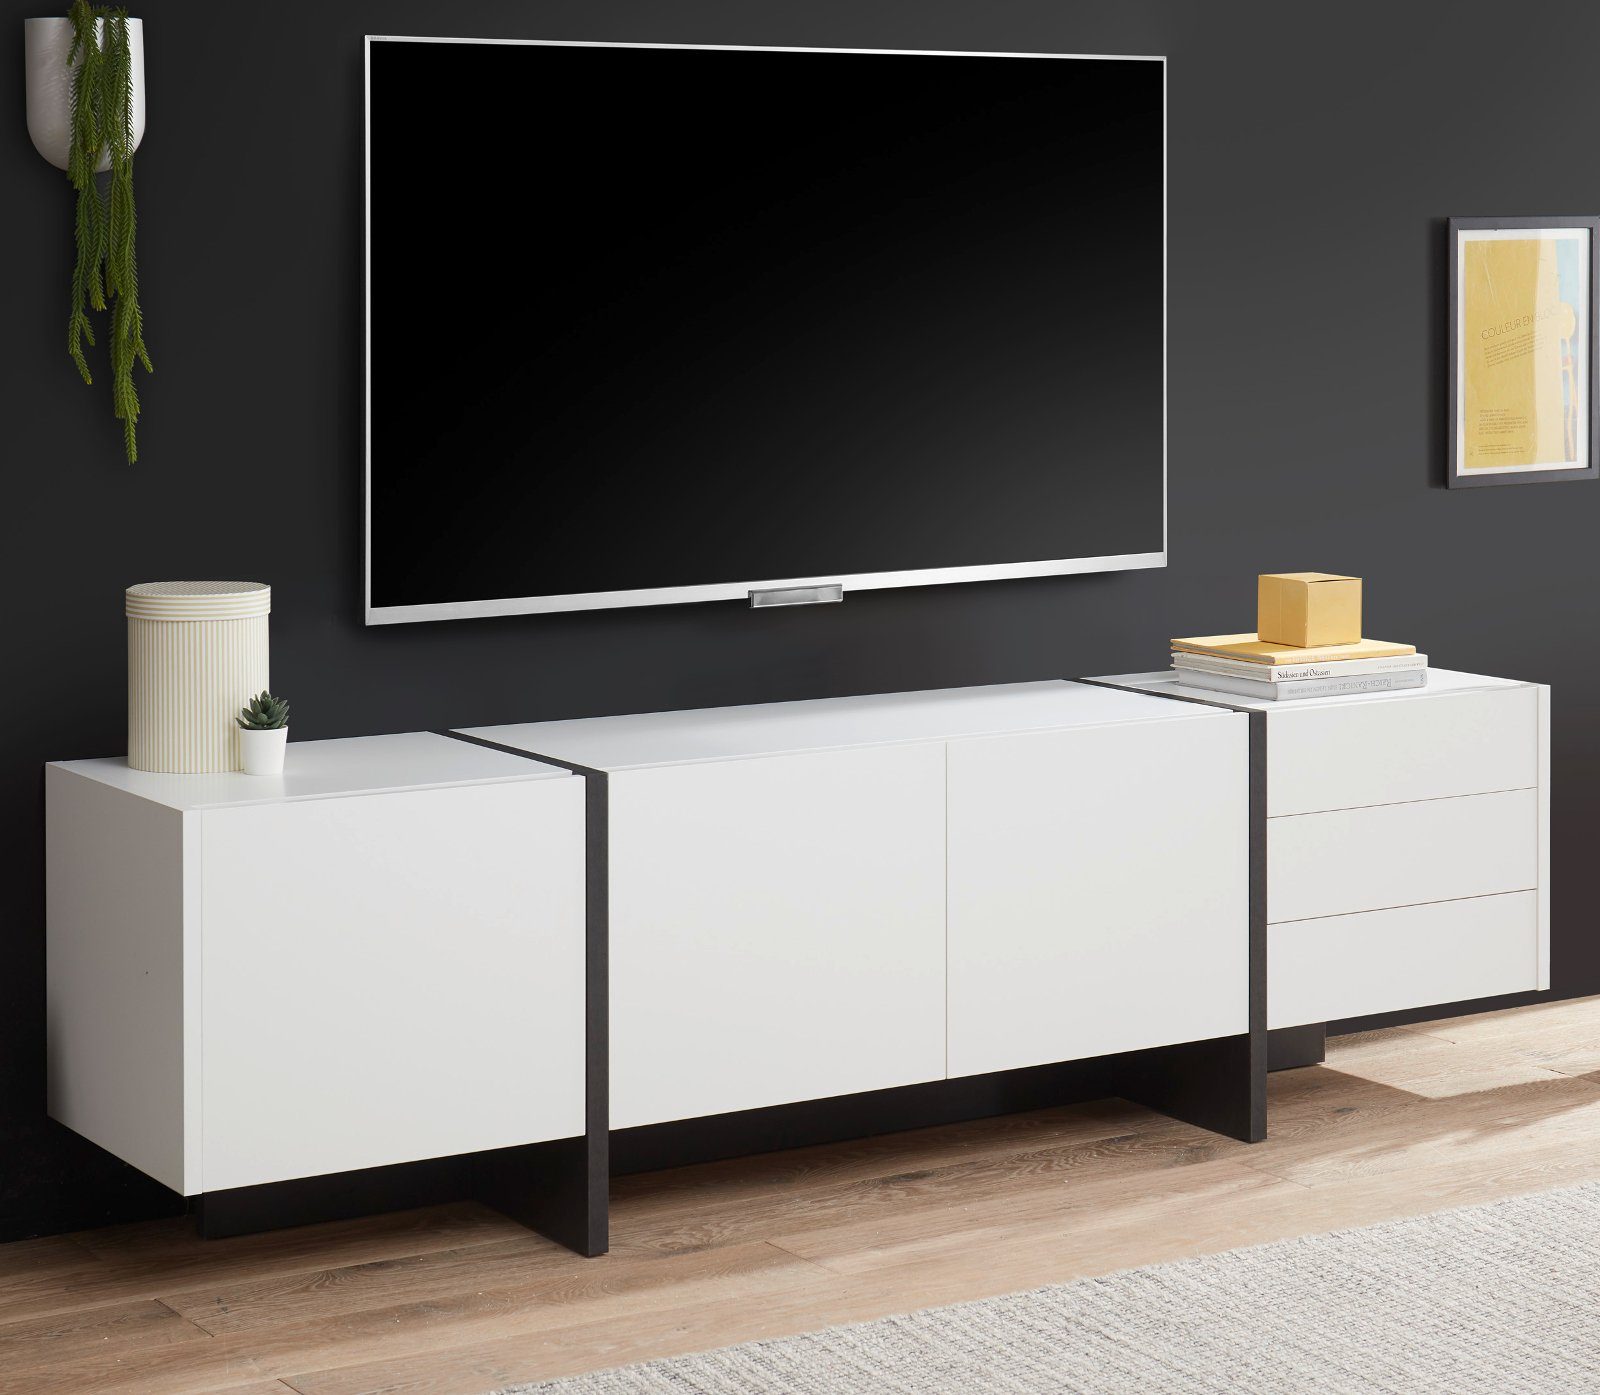 IMV Lowboard Design M TV Unterschrank in weiß mit grau ...